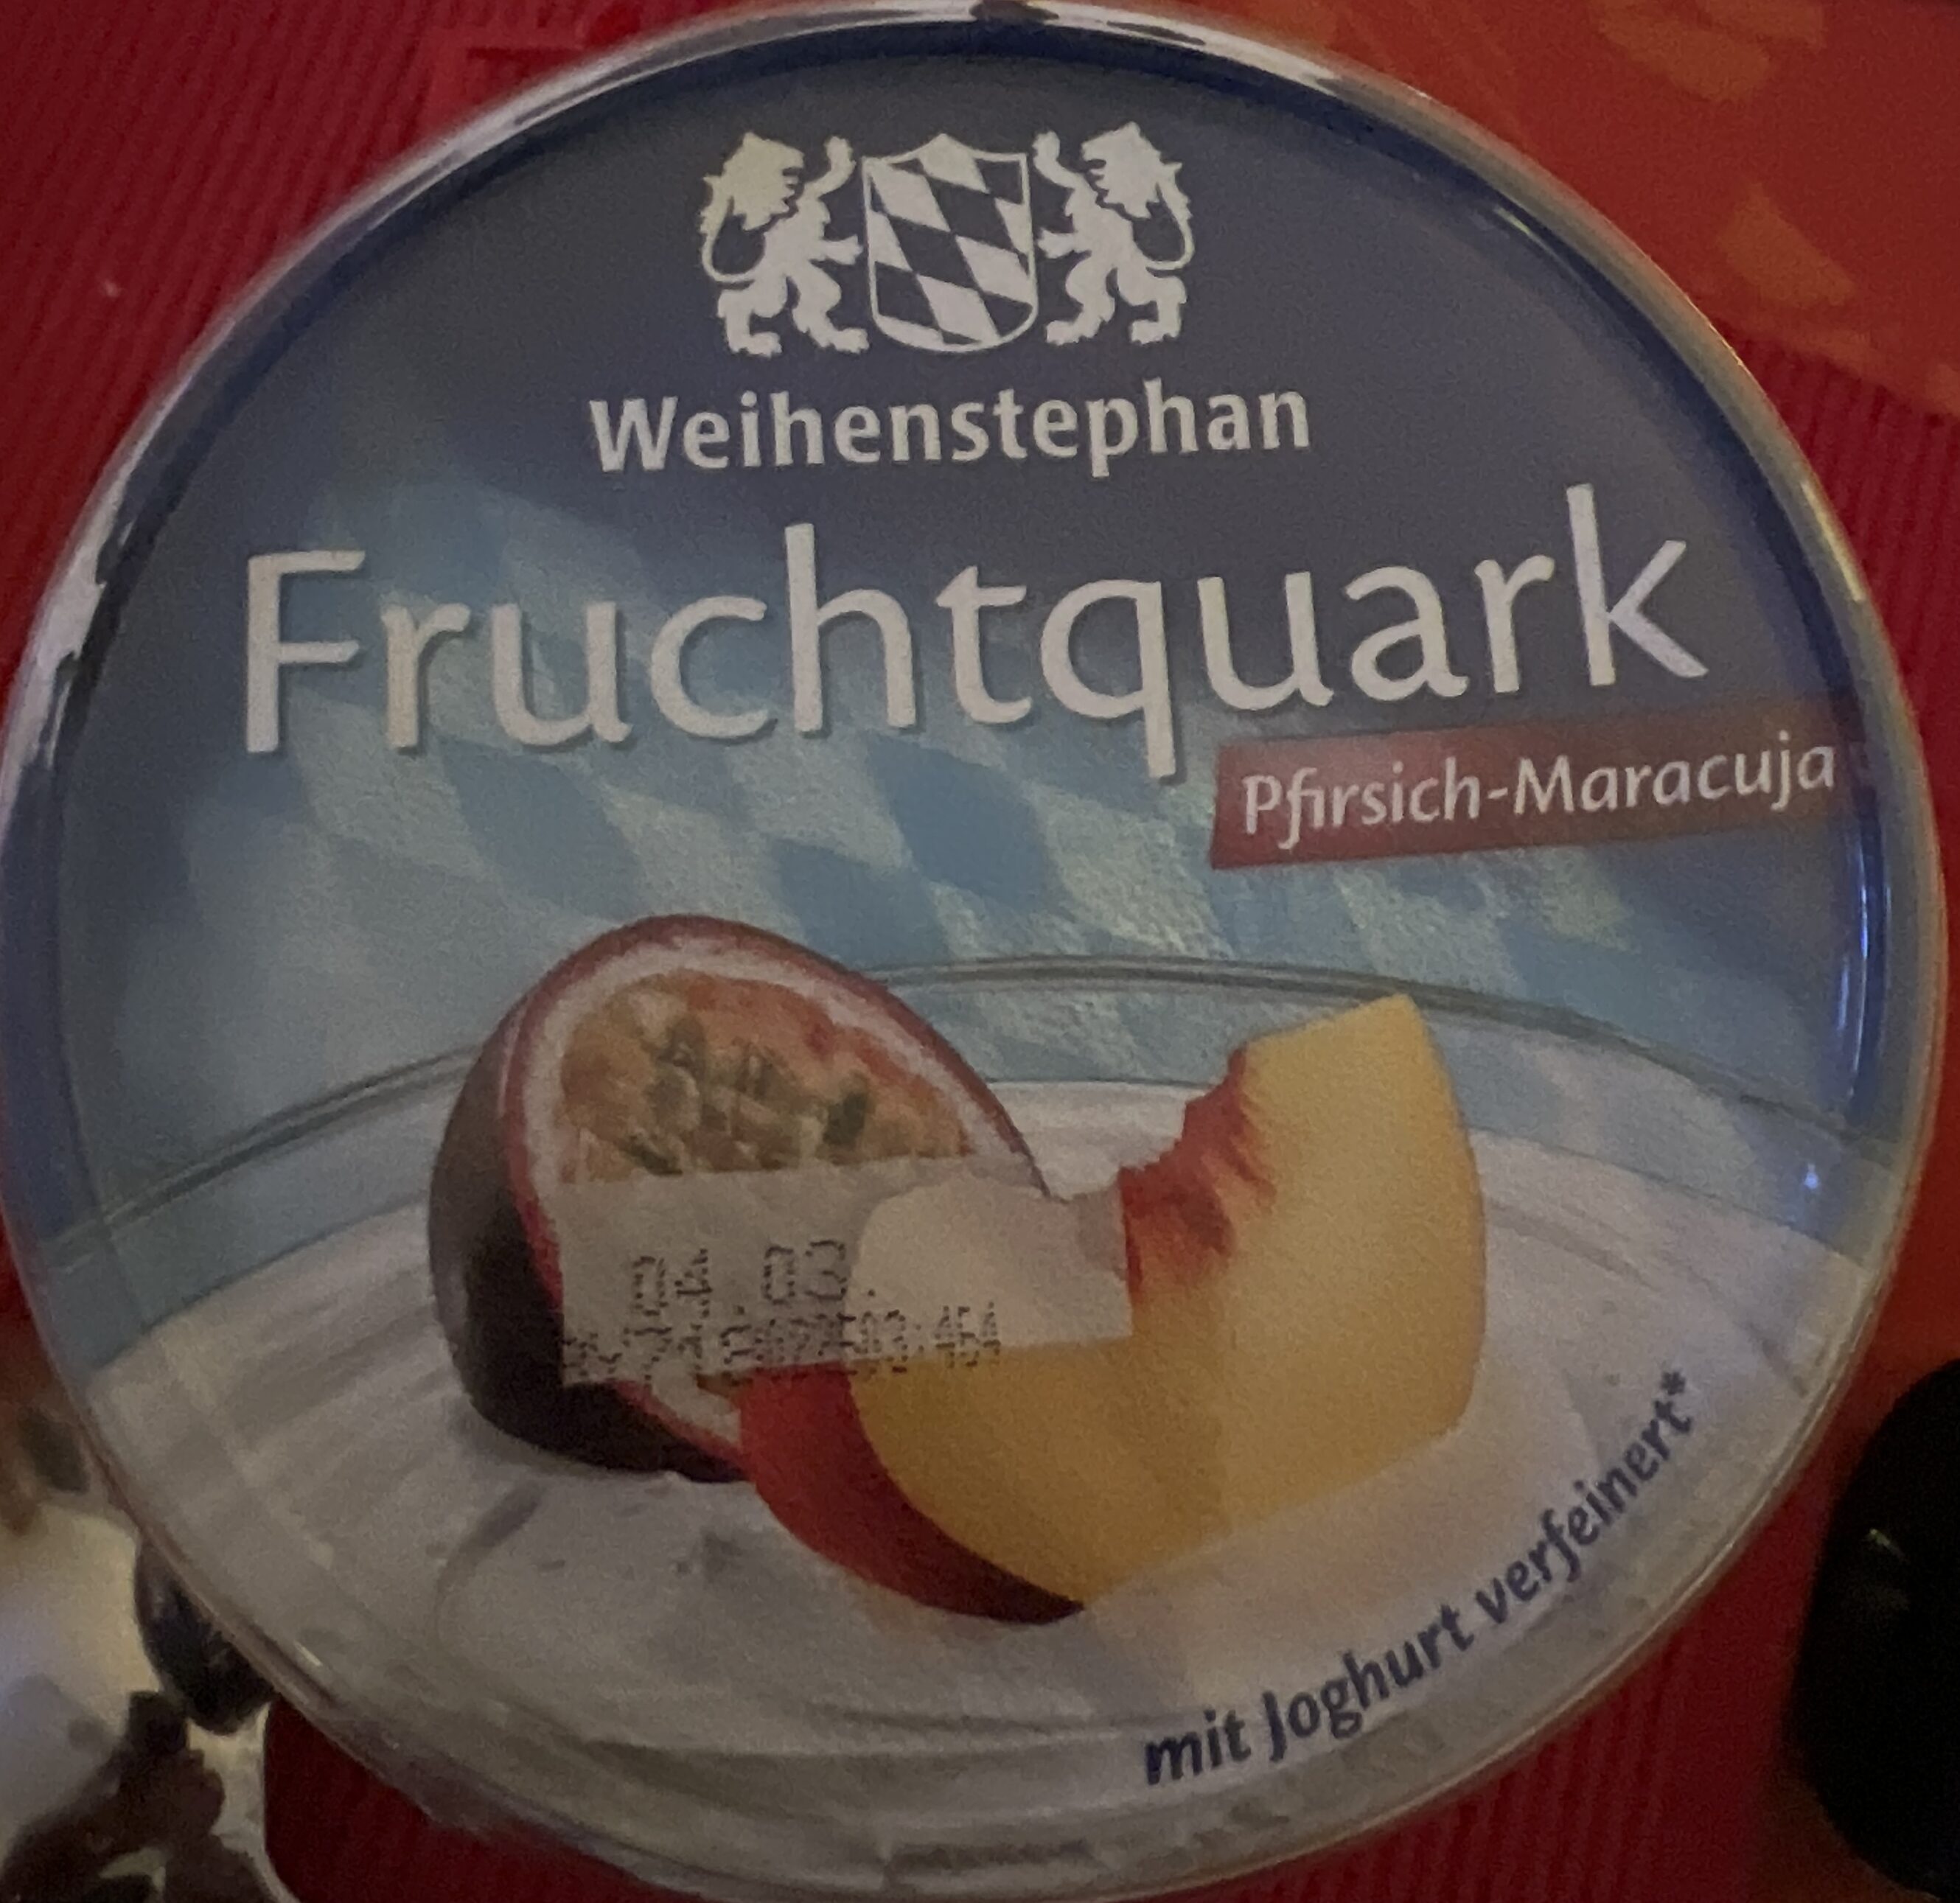 Fruchtquark Pfirsich-Maracuja - Produkt